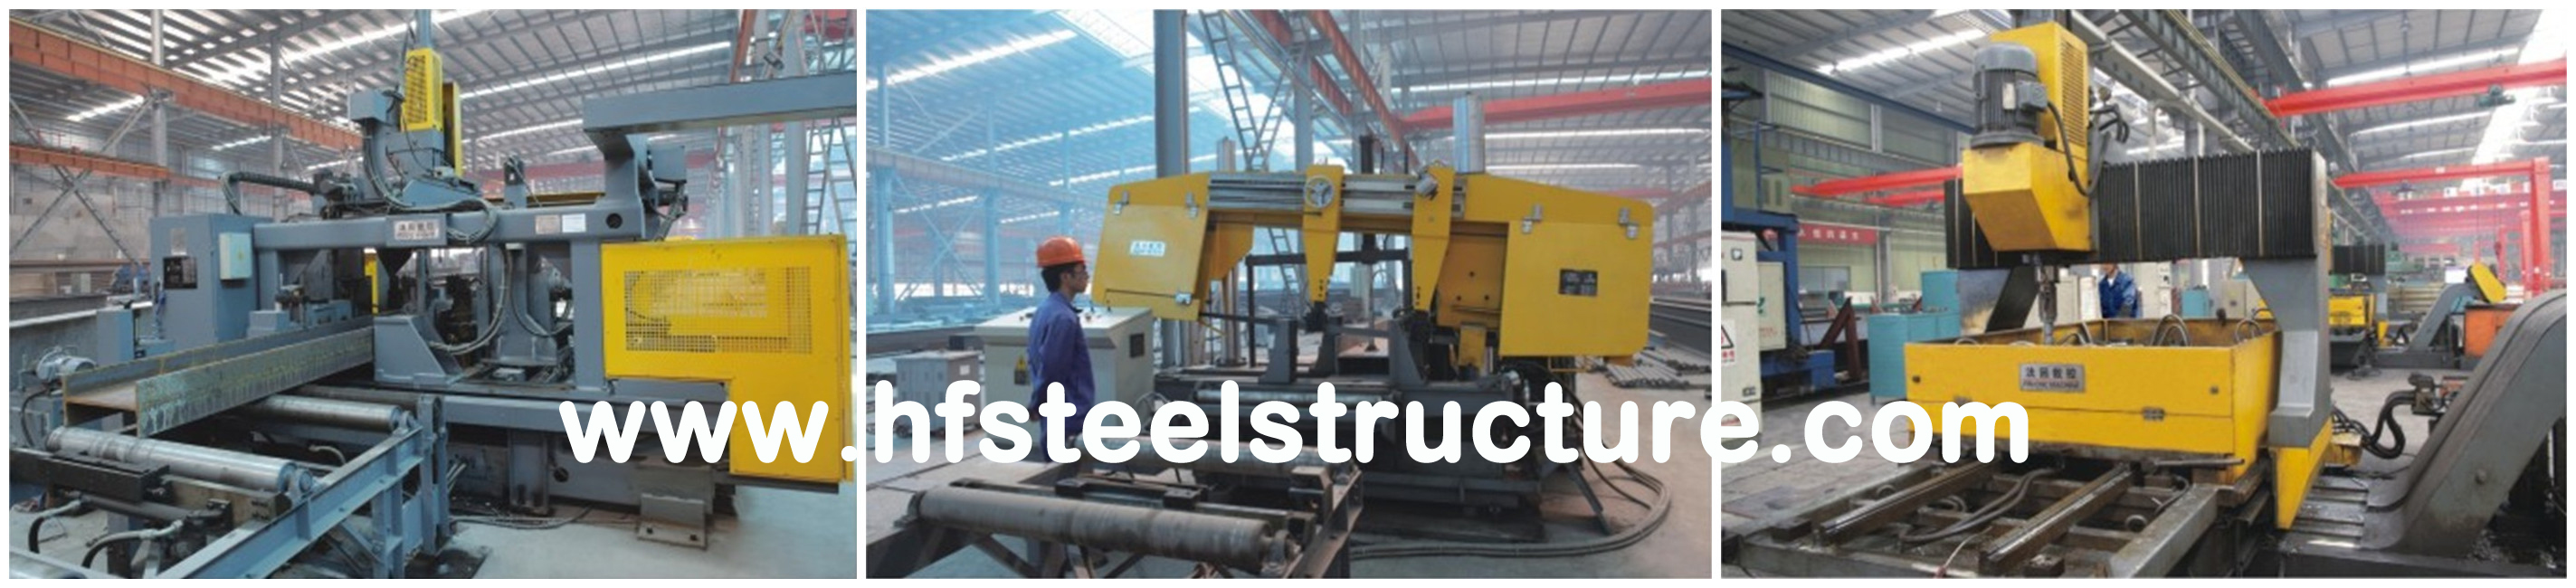 Construções de aço industriais da fabricação do aço estrutural para o quadro do armazém